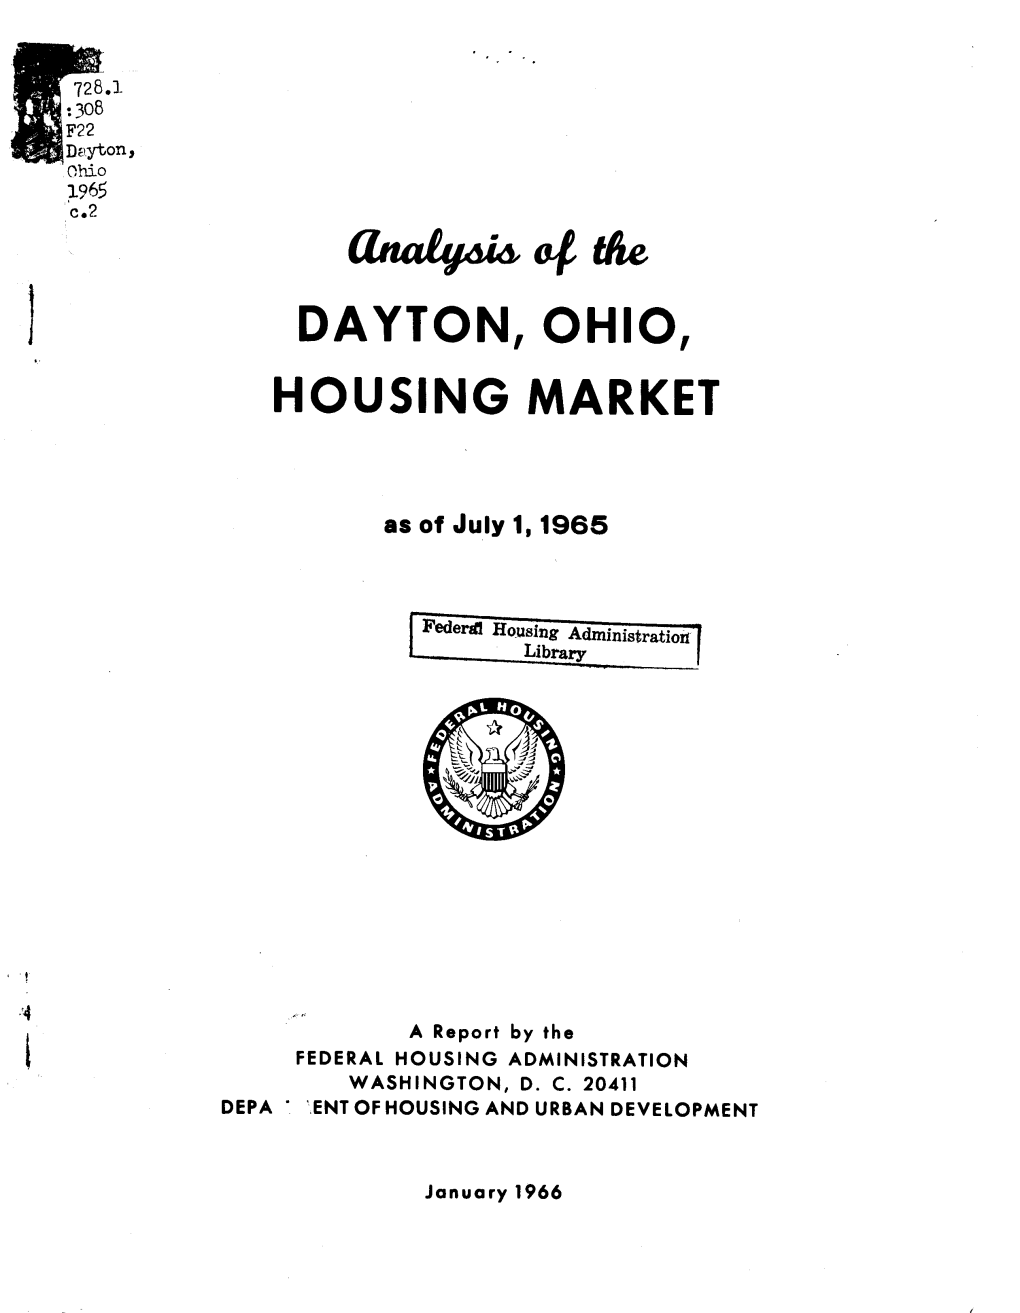 Analysis of the Dayton, Ohio Housing Market